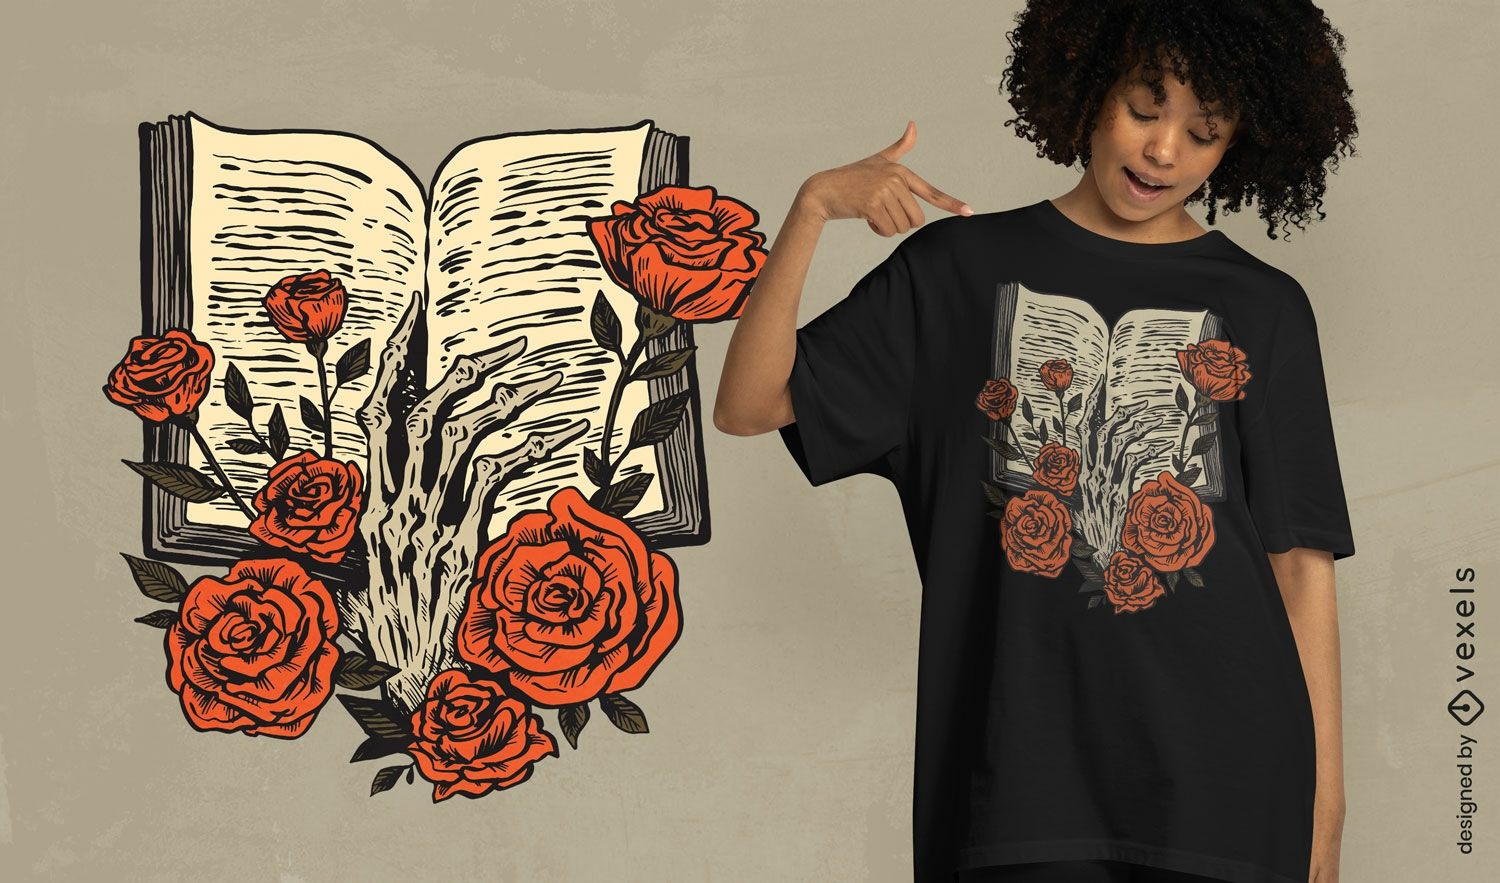 Dise?o de camiseta de libro abierto con rosas.